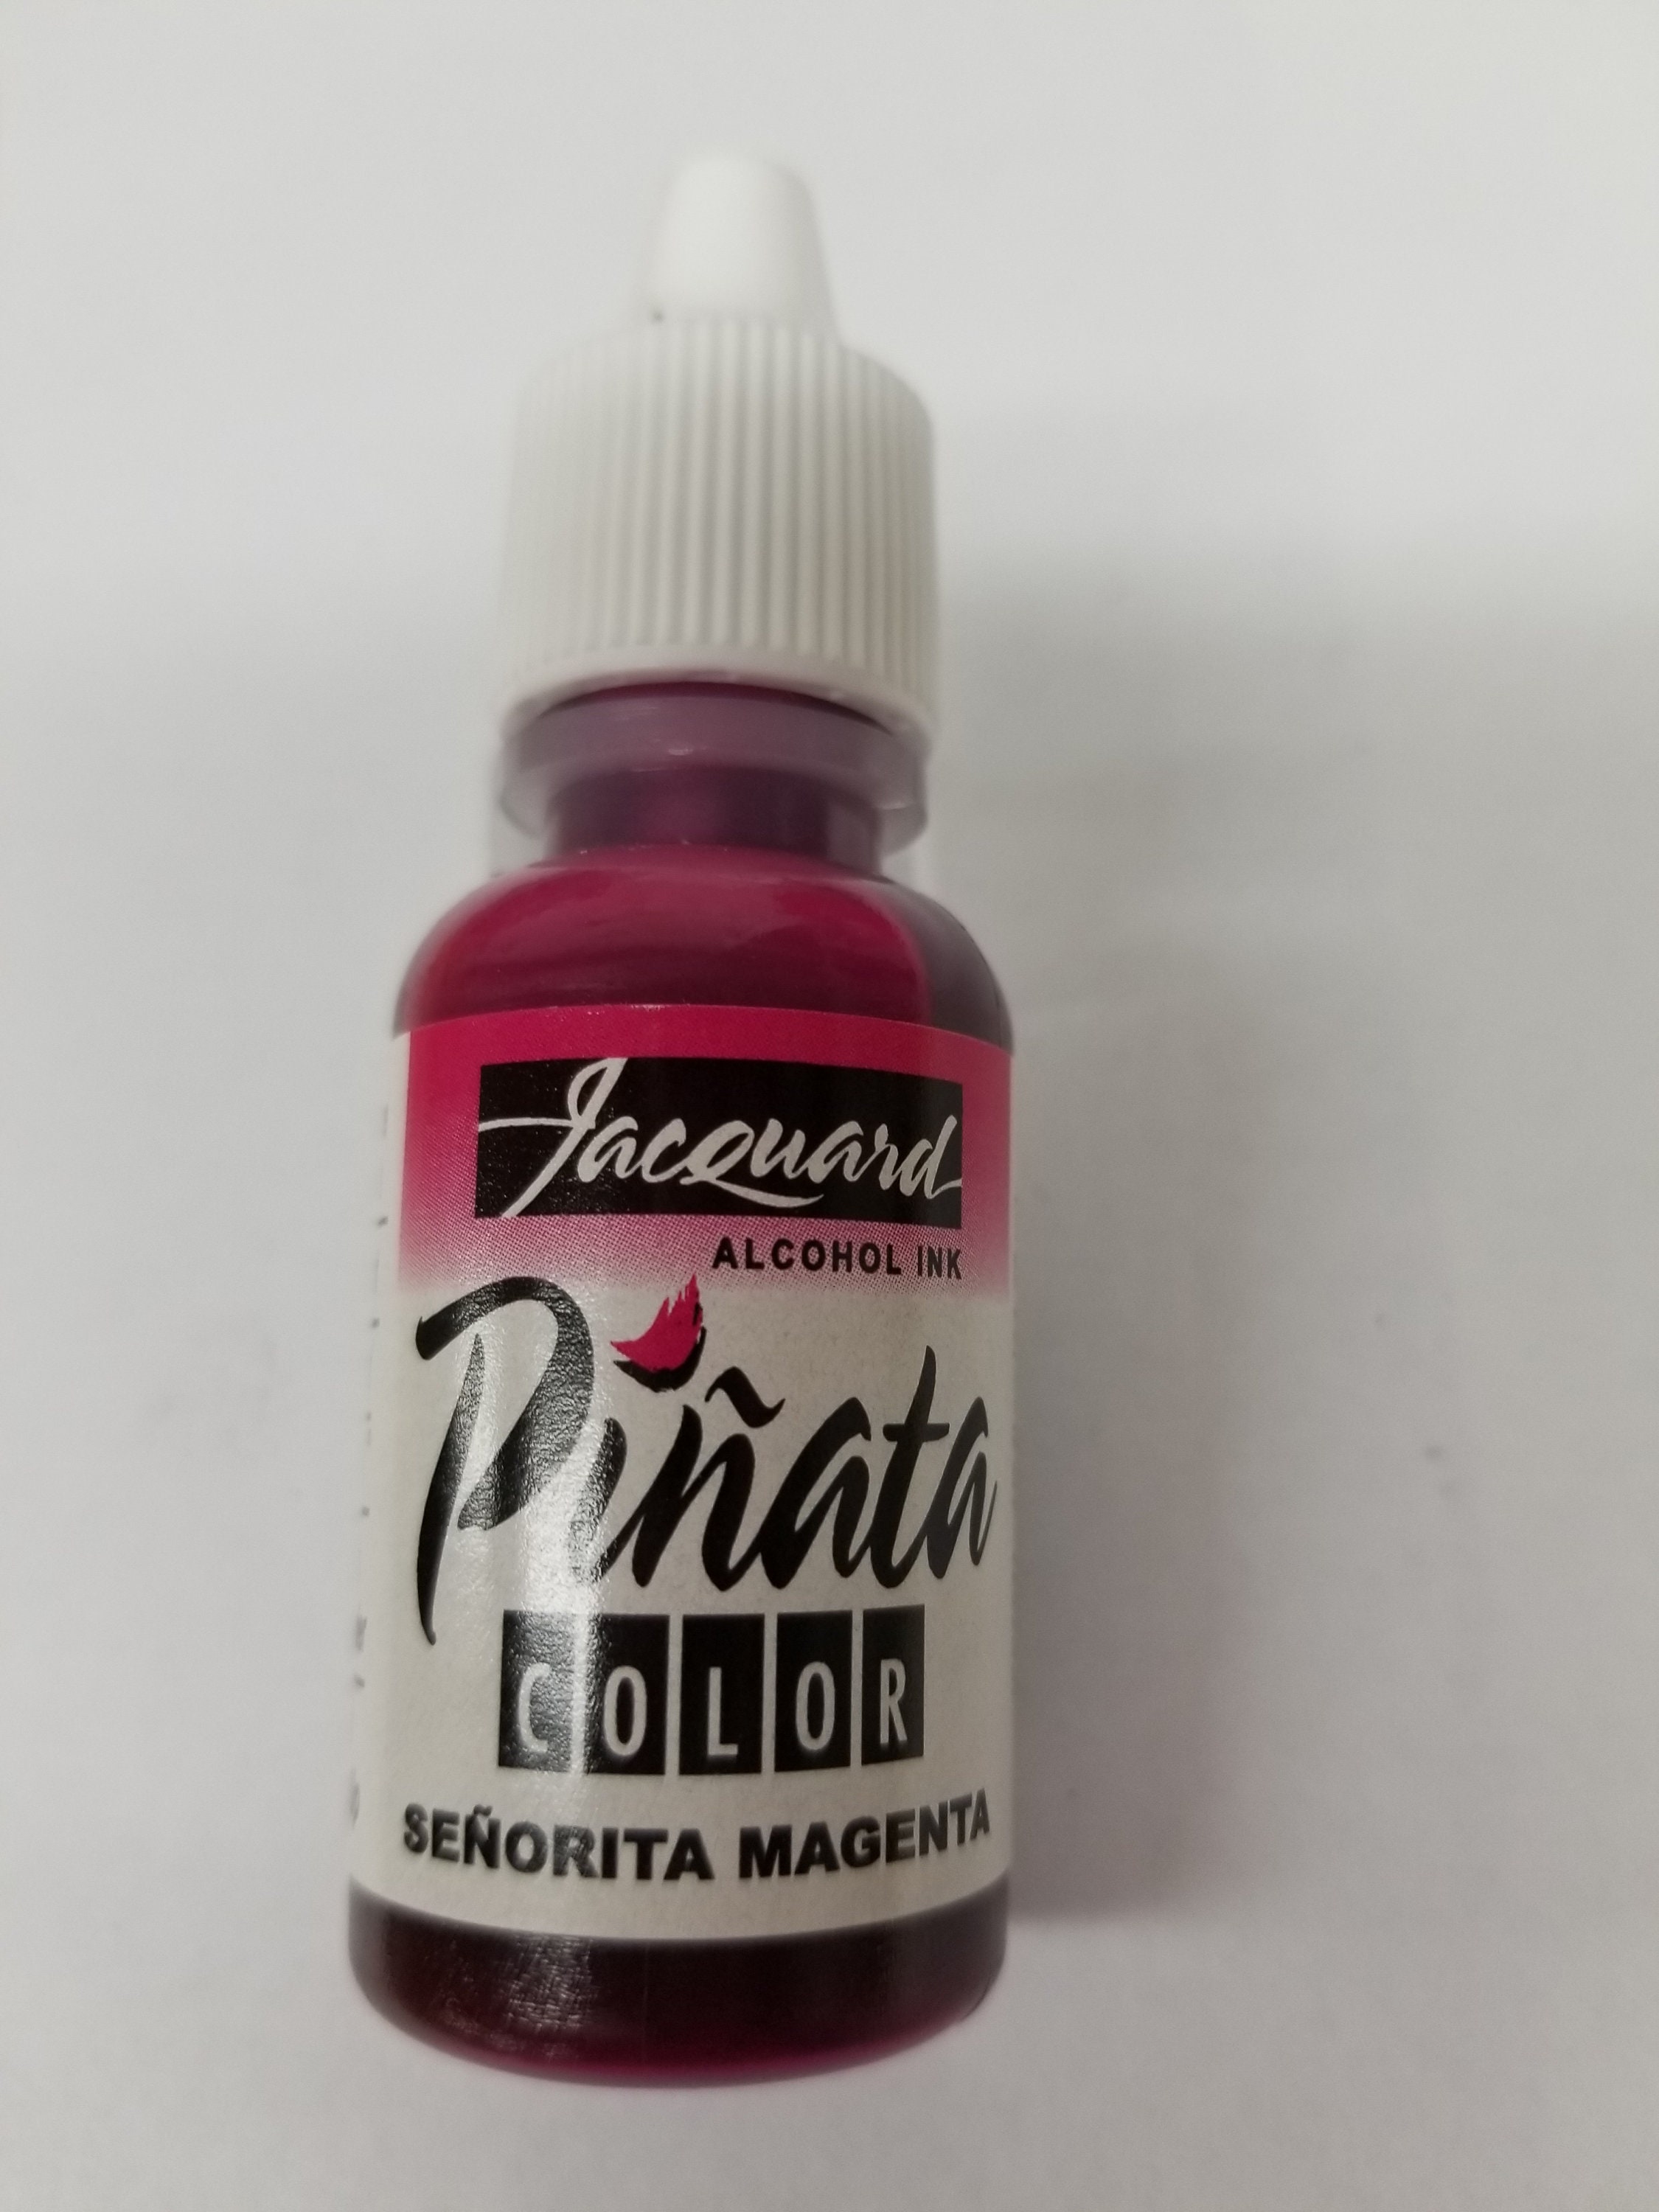 Jacquard Pinata Alcohol Ink - Coral, 1/2oz